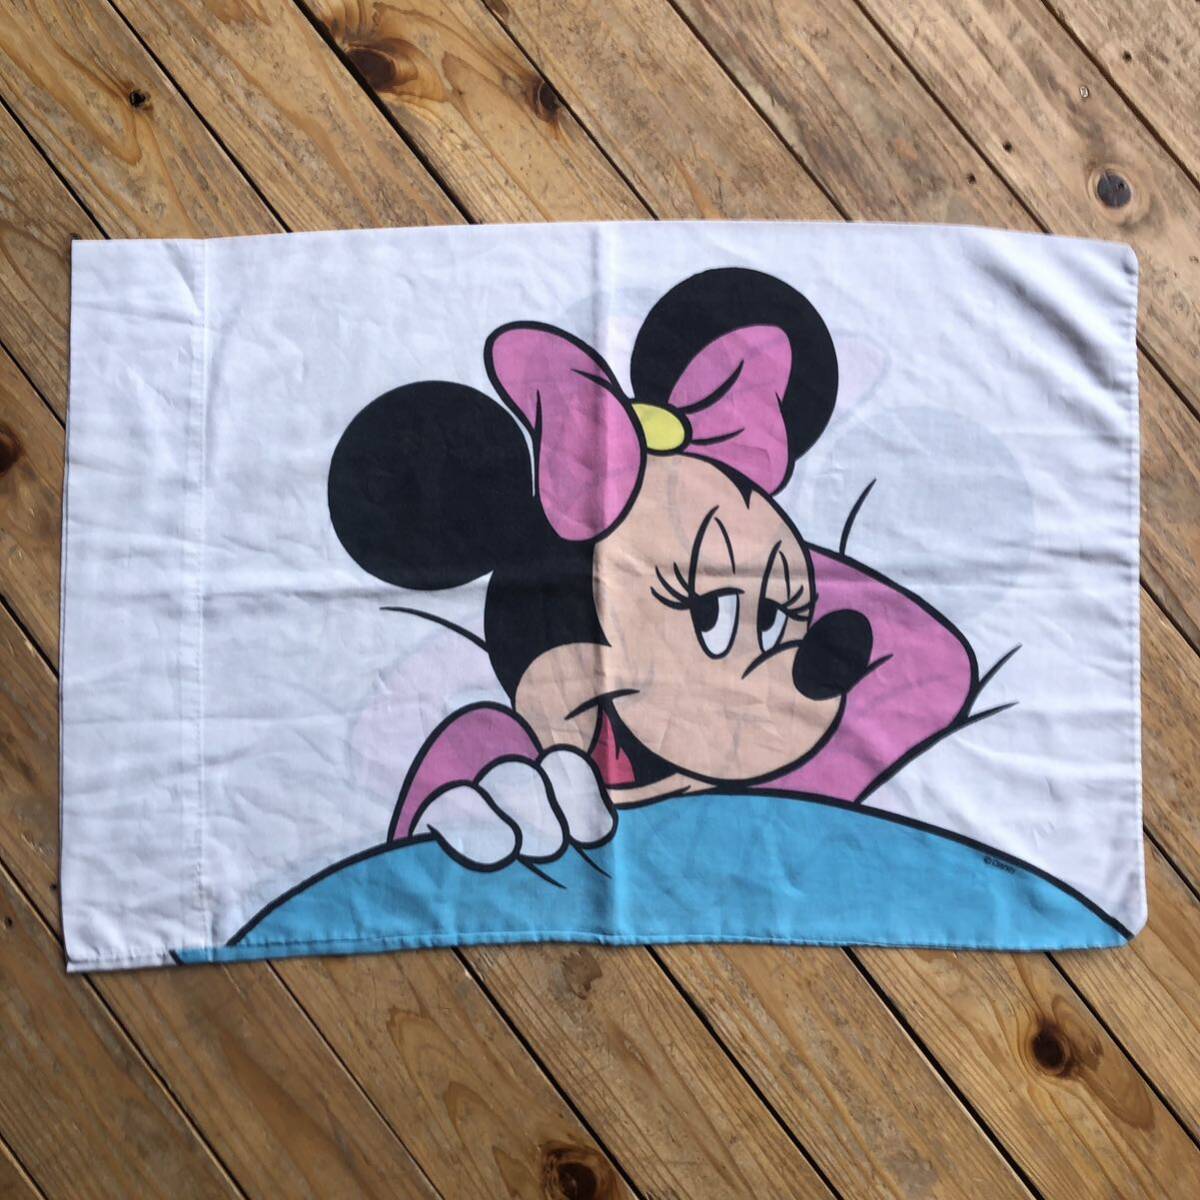 USA Vintage pillow кейс Minnie Mouse Disney Disney подушка покрытие Cara переделка ткань материалы пакет форма двусторонний принт America скупка B1976